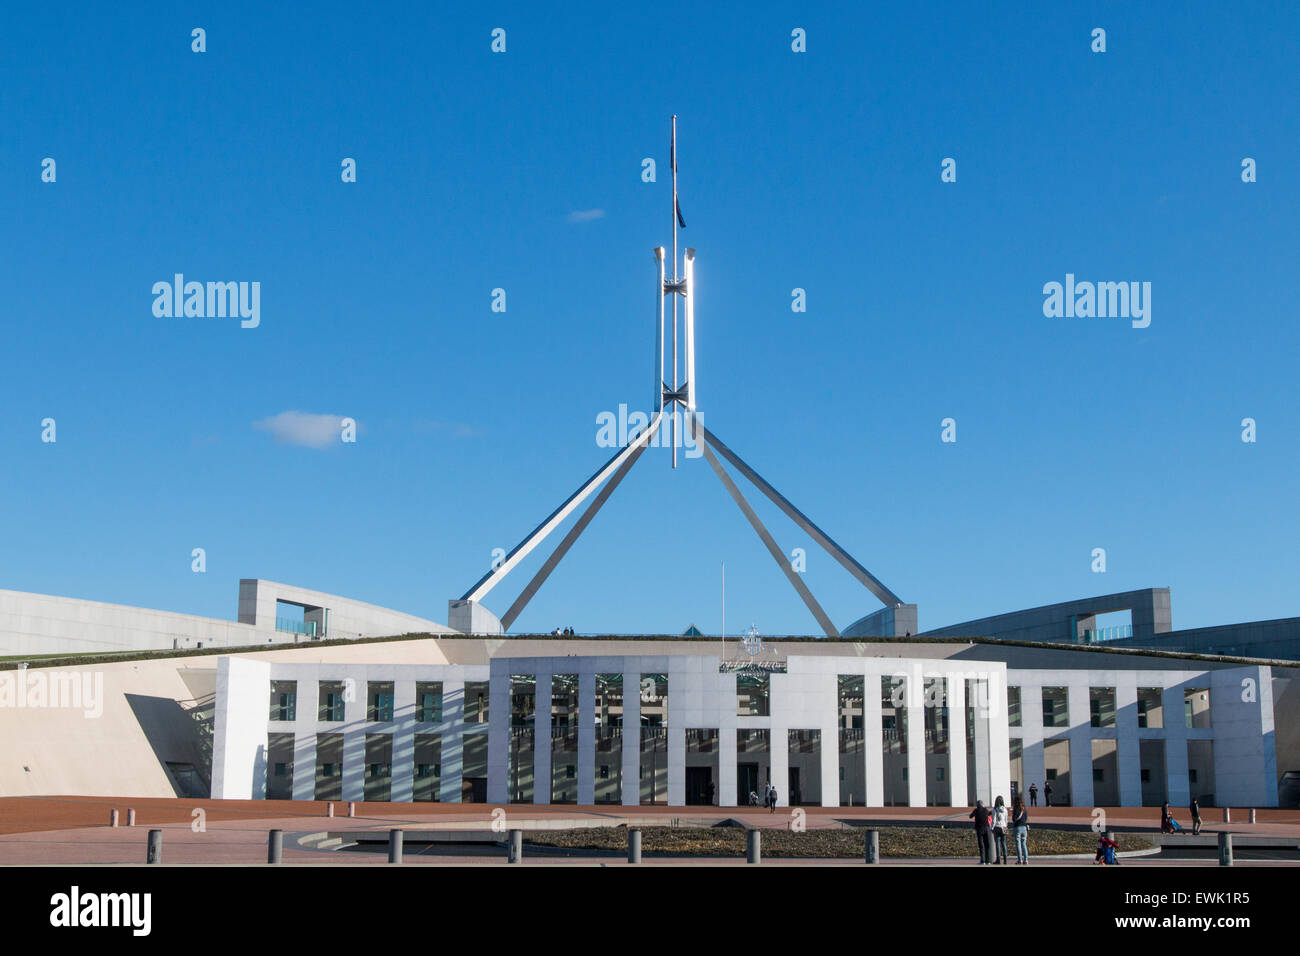 Vue du nouveau bâtiment de la Maison du parlement à Canberra, la capitale de l'Australie, sous le soleil d'hivers,jour,la Loi sur l'Australie Banque D'Images